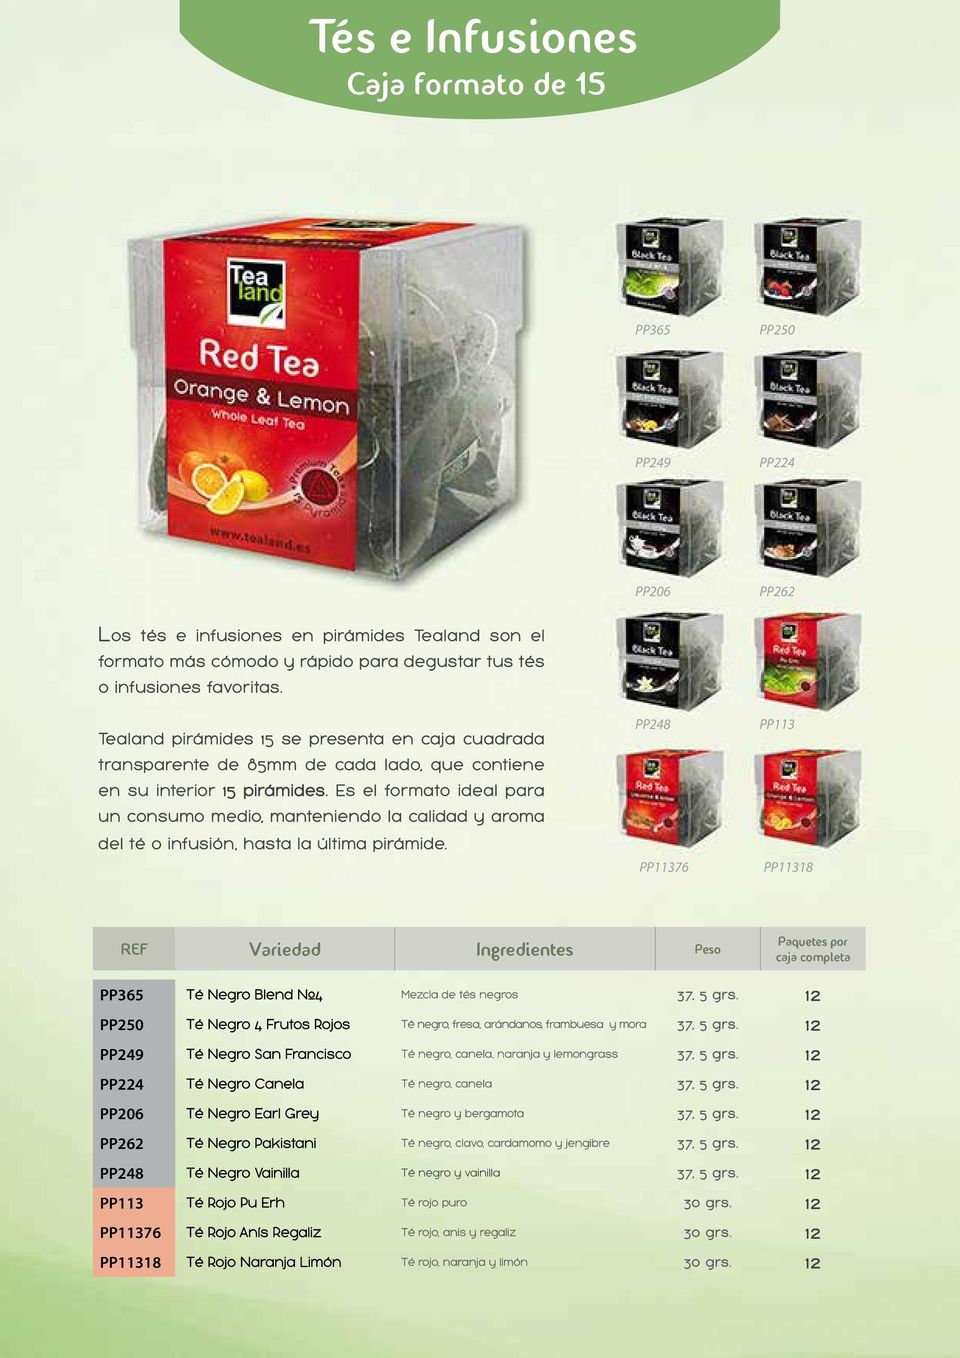 Es el formato ideal para un consumo medio, manteniendo la calidad y aroma del té o infusión, hasta la última pirámide.